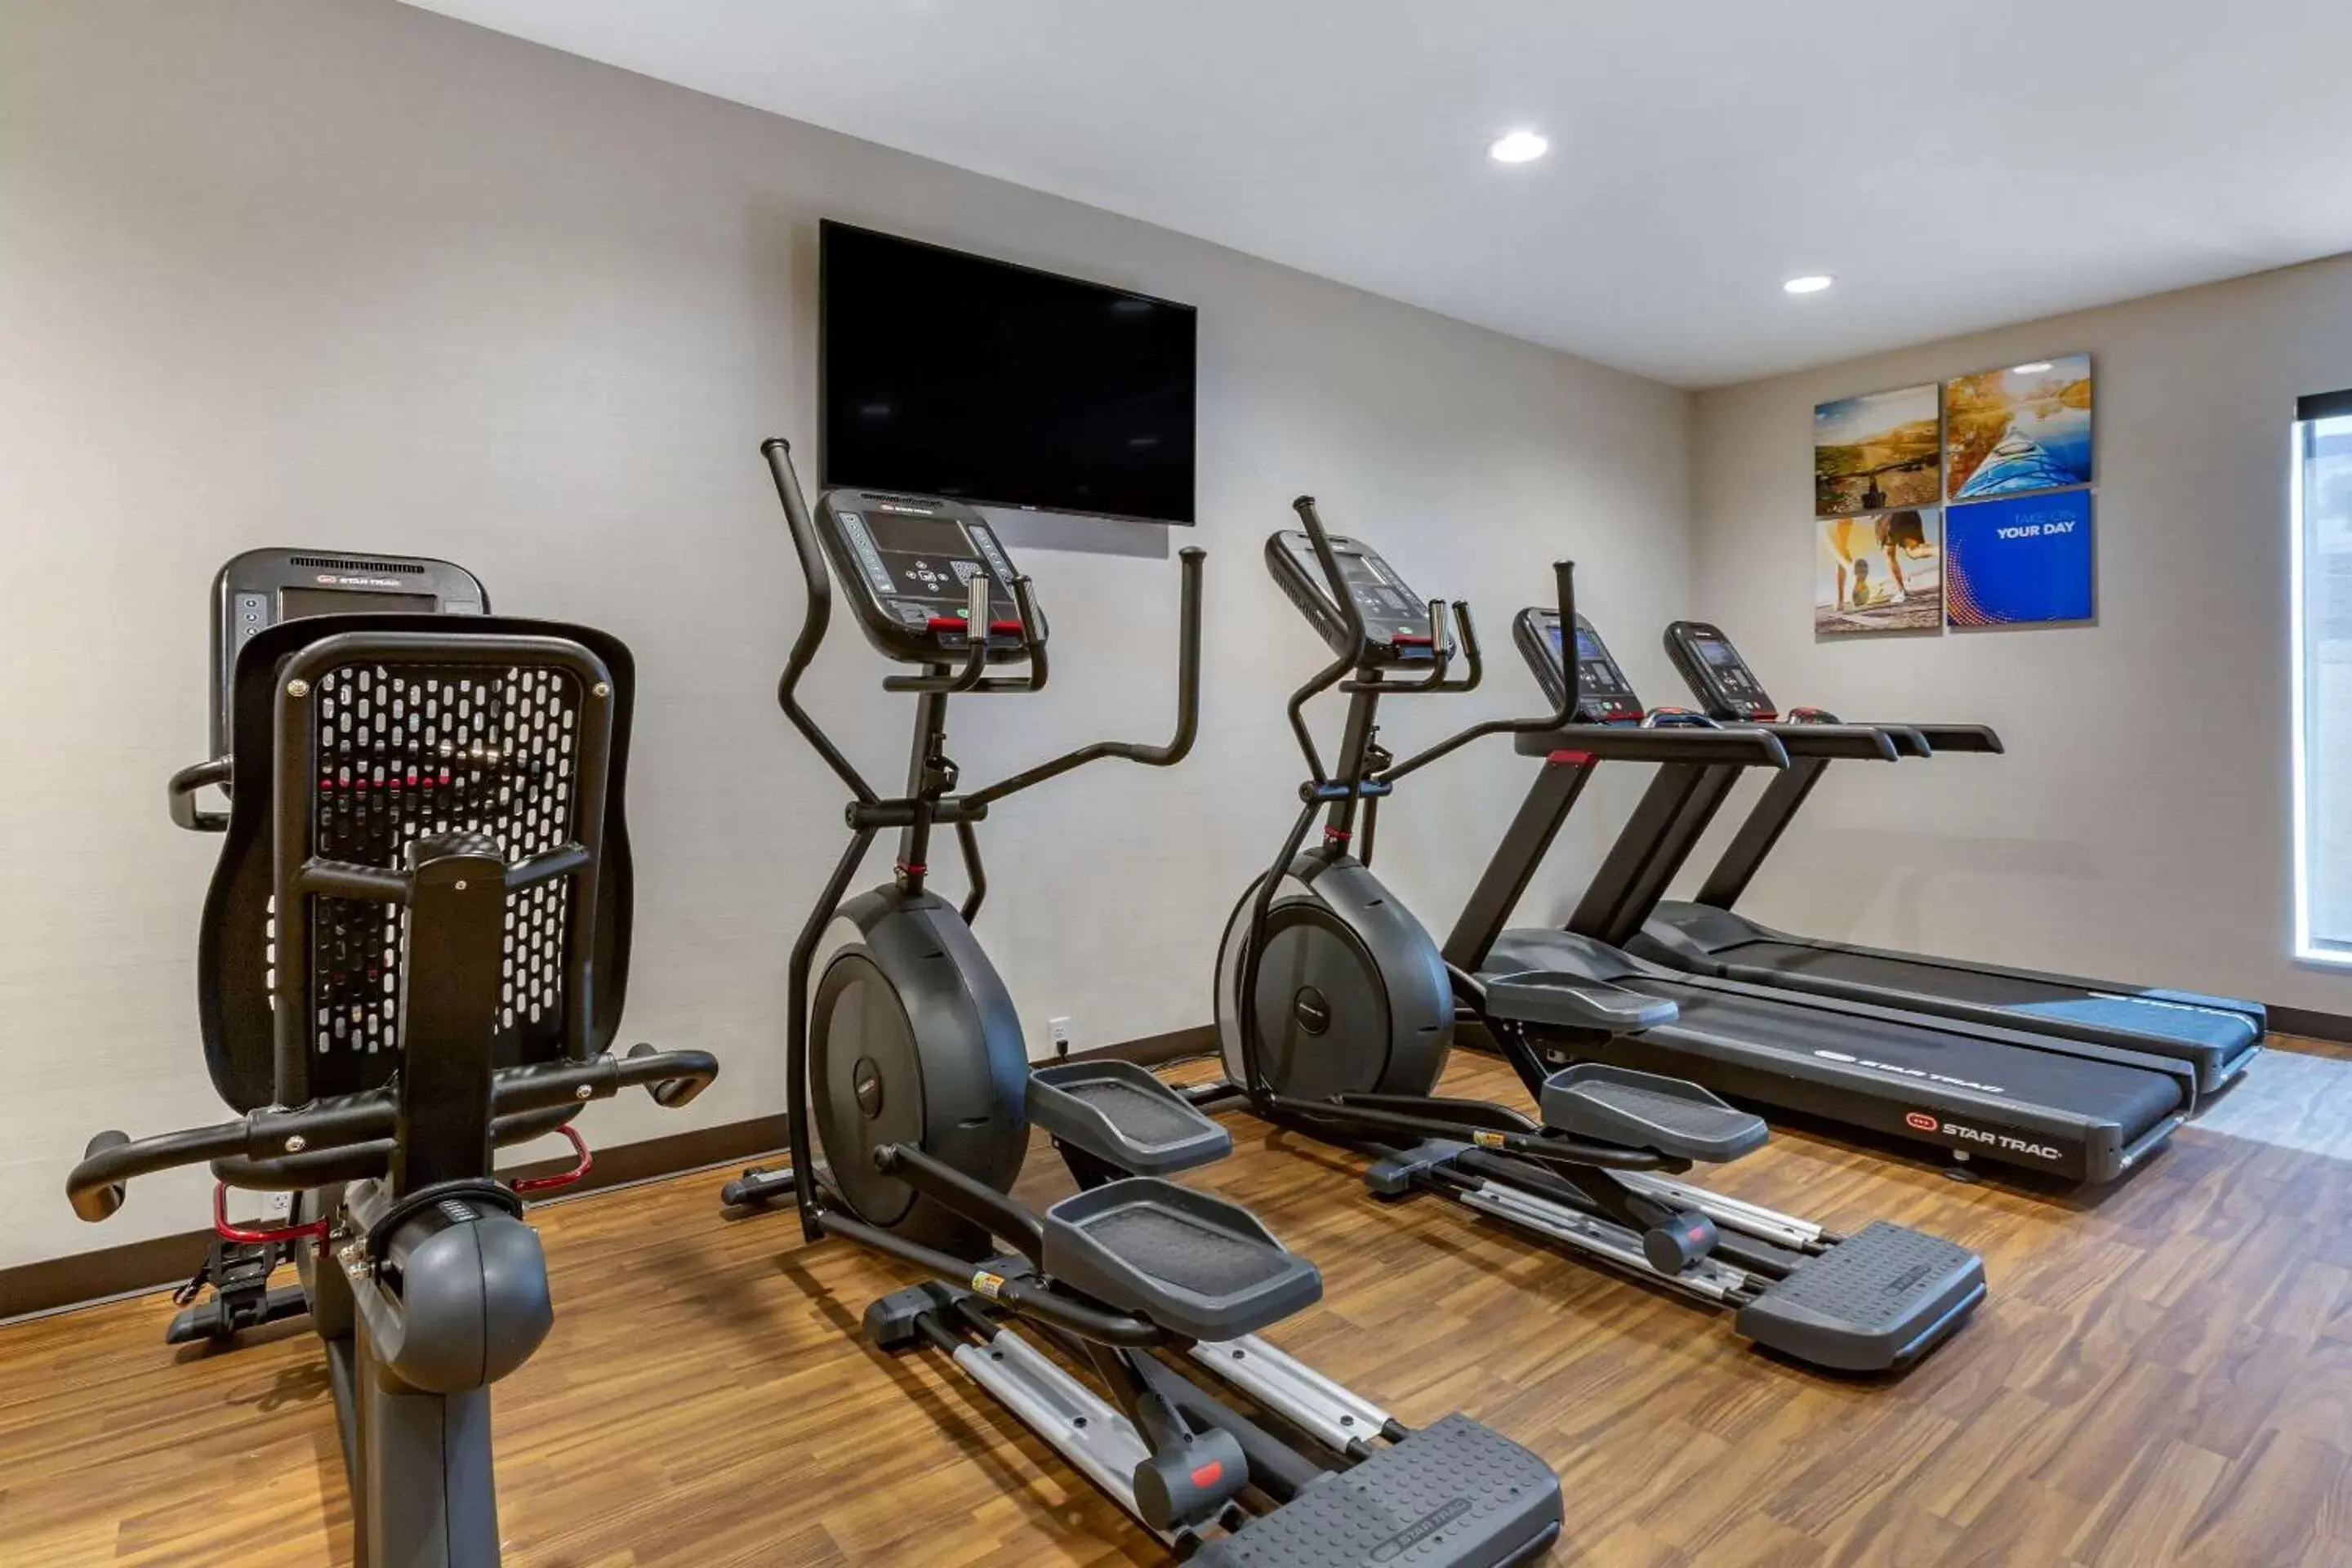 Fitness centre/facilities, Fitness Center/Facilities in Comfort Suites Albuquerque Airport